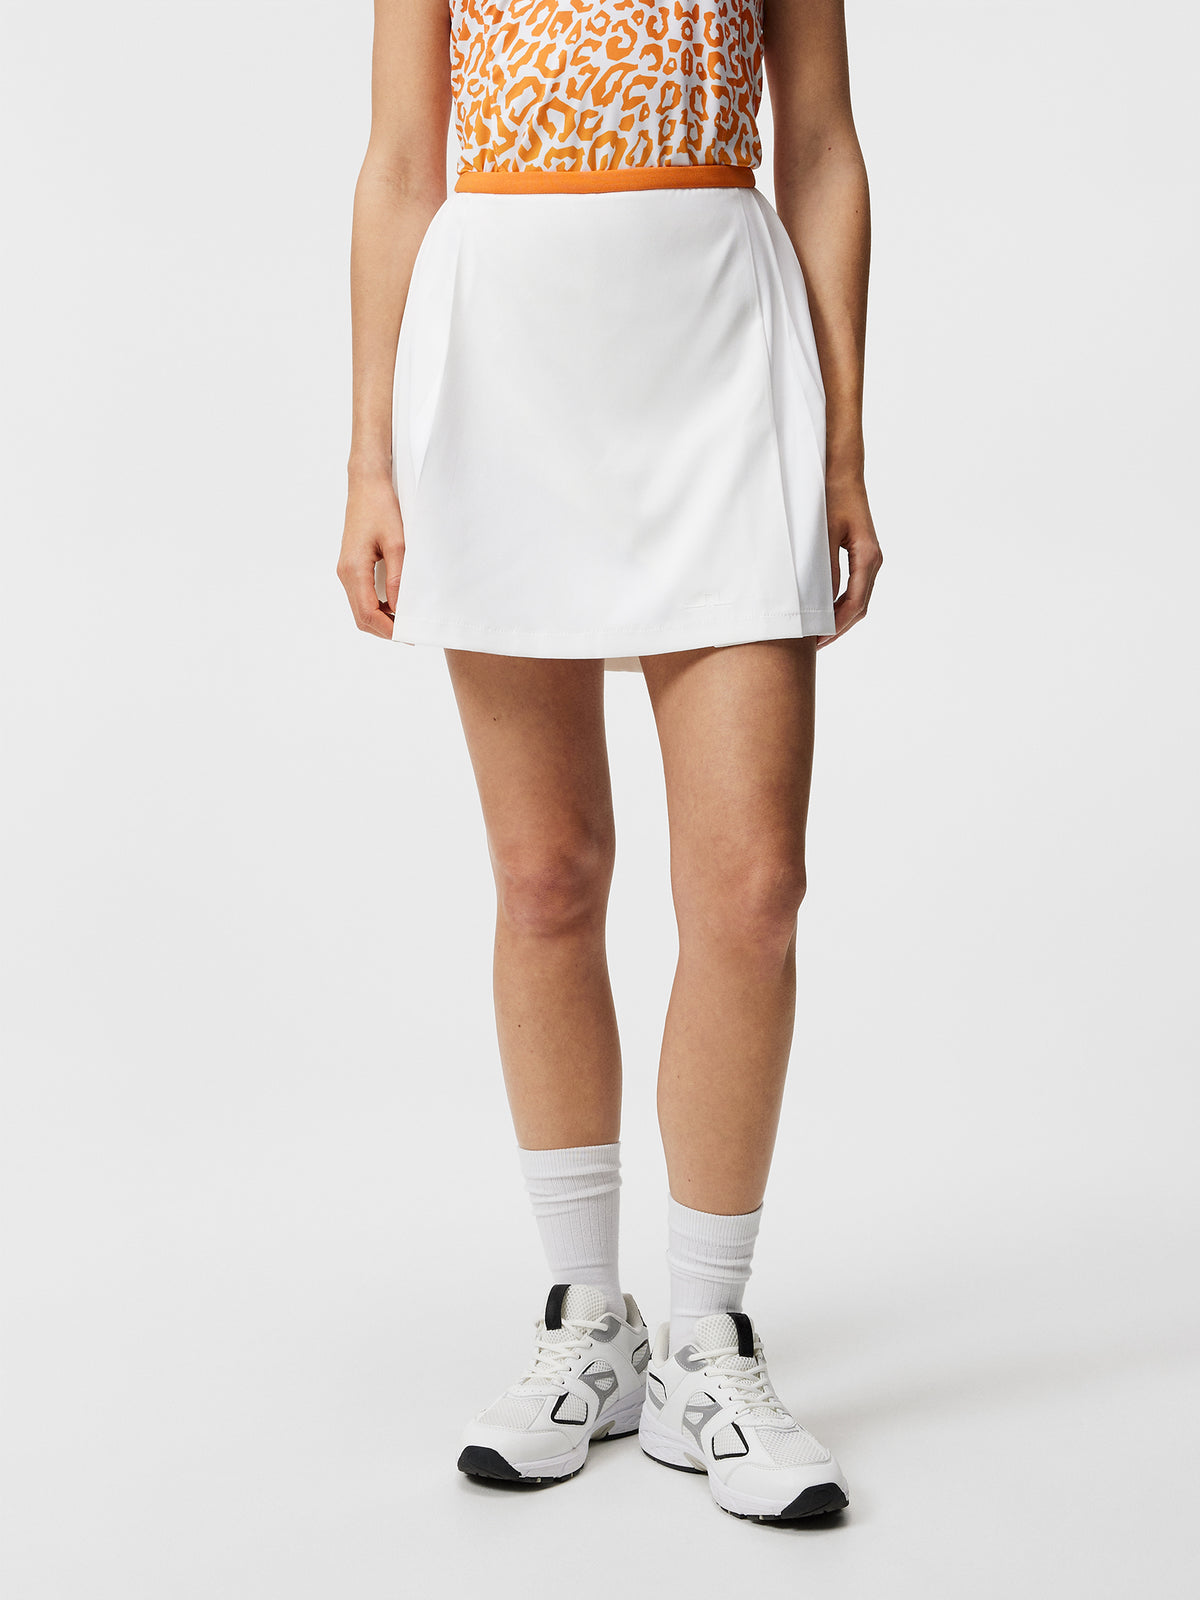 Sierra Pleat Skirt / White